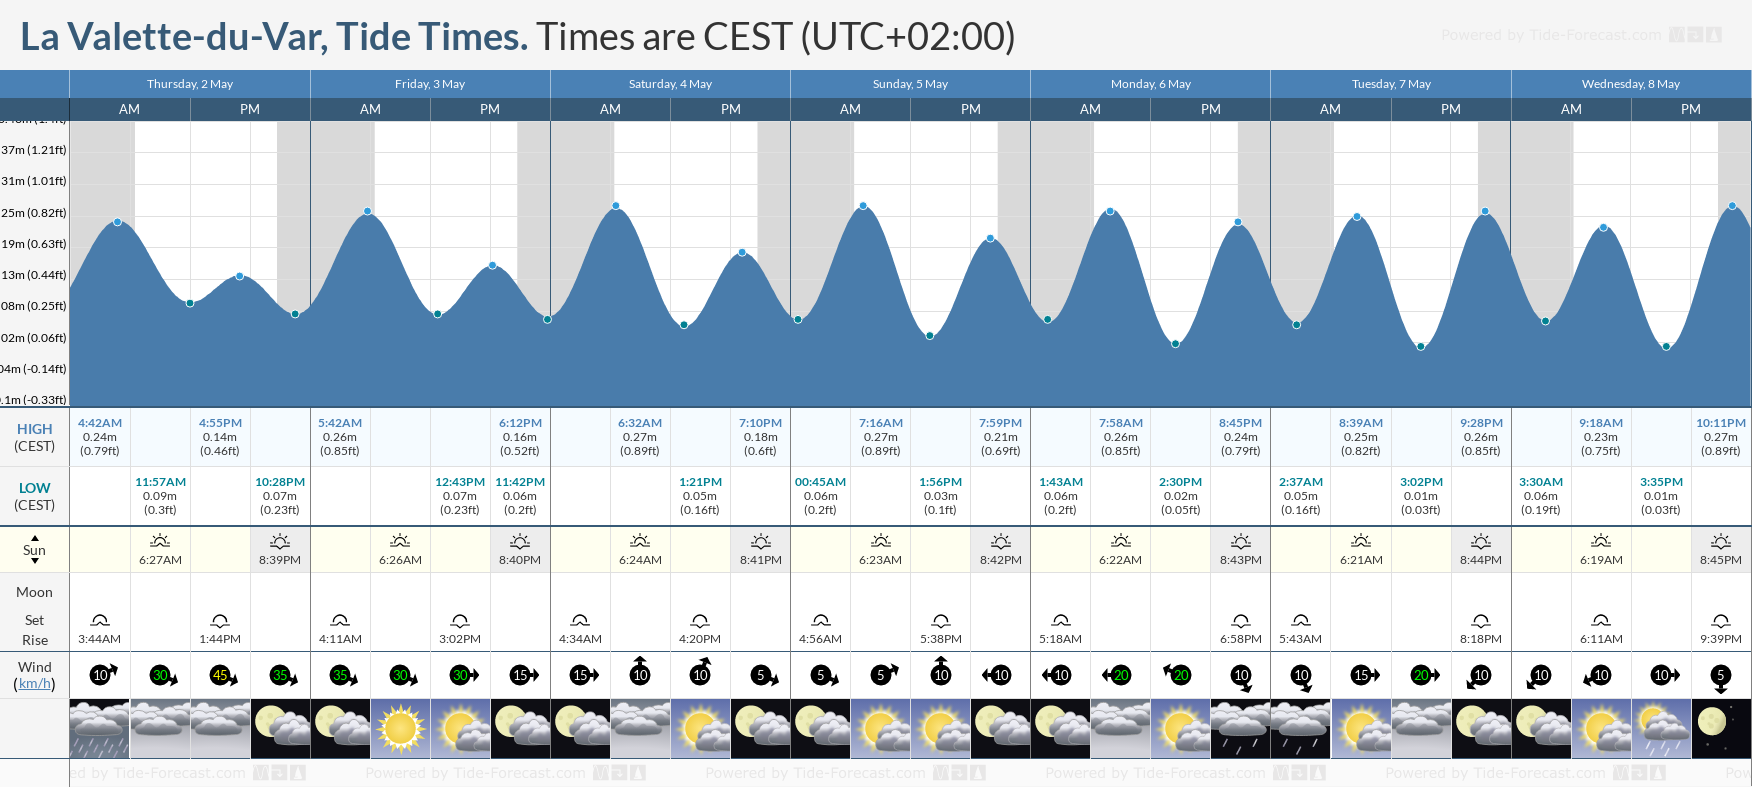 La Valette-du-Var Tide Chart including high and low tide tide times for the next 7 days